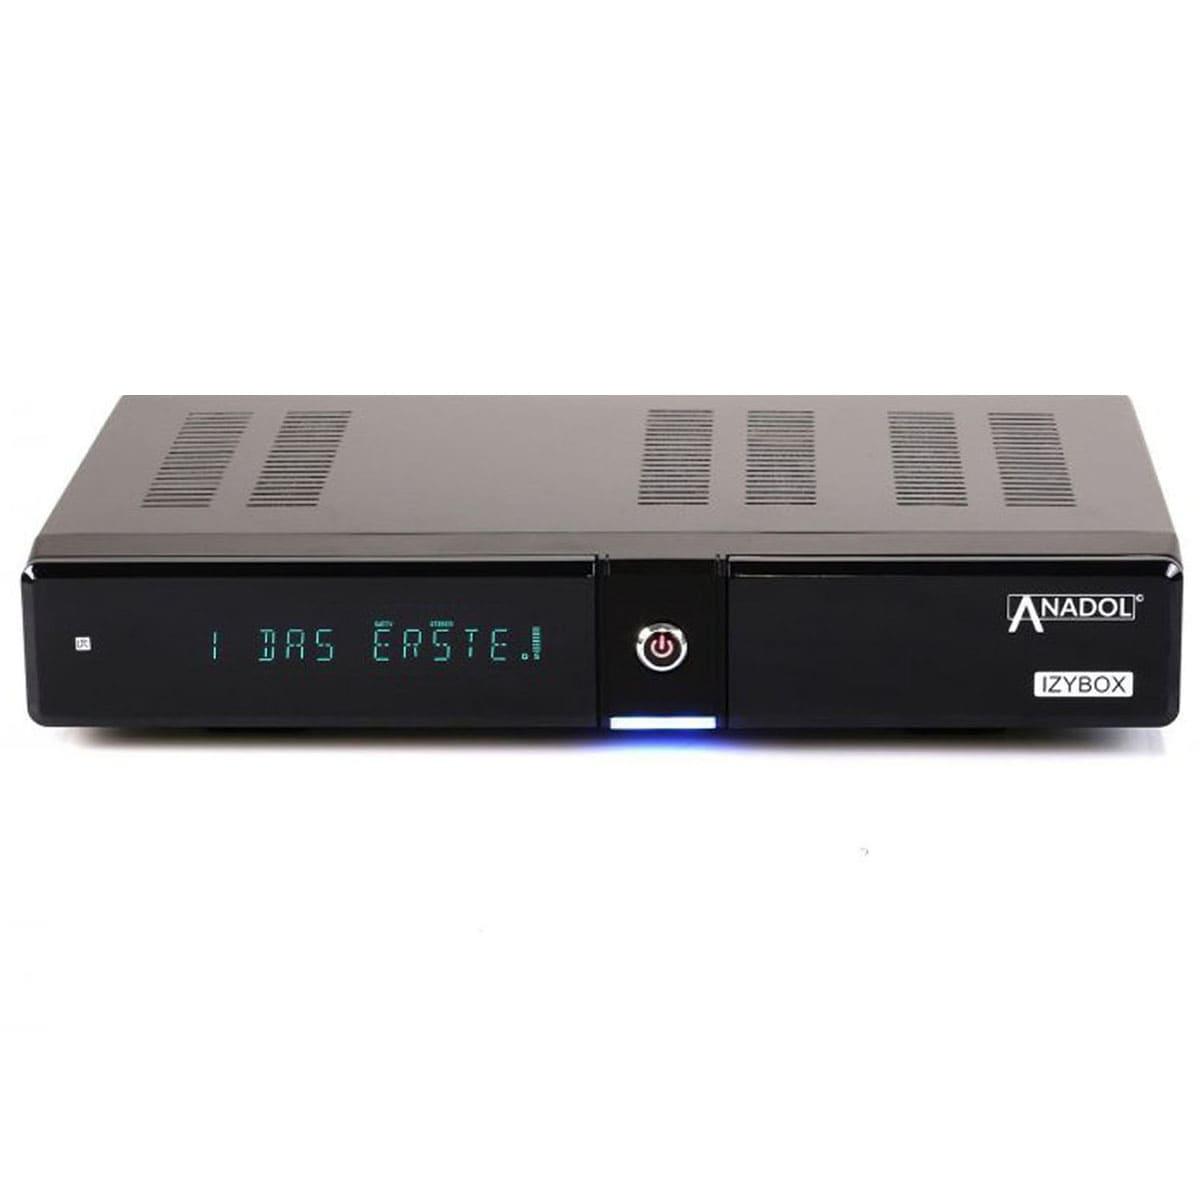 Pantalla VFD ANADOL IZYBOX 4K UHD Lector de Tarjetas función de grabación PVR 2X USB S2X-Tuner Timeshift Receptor de satélite transmisor preinstalado 